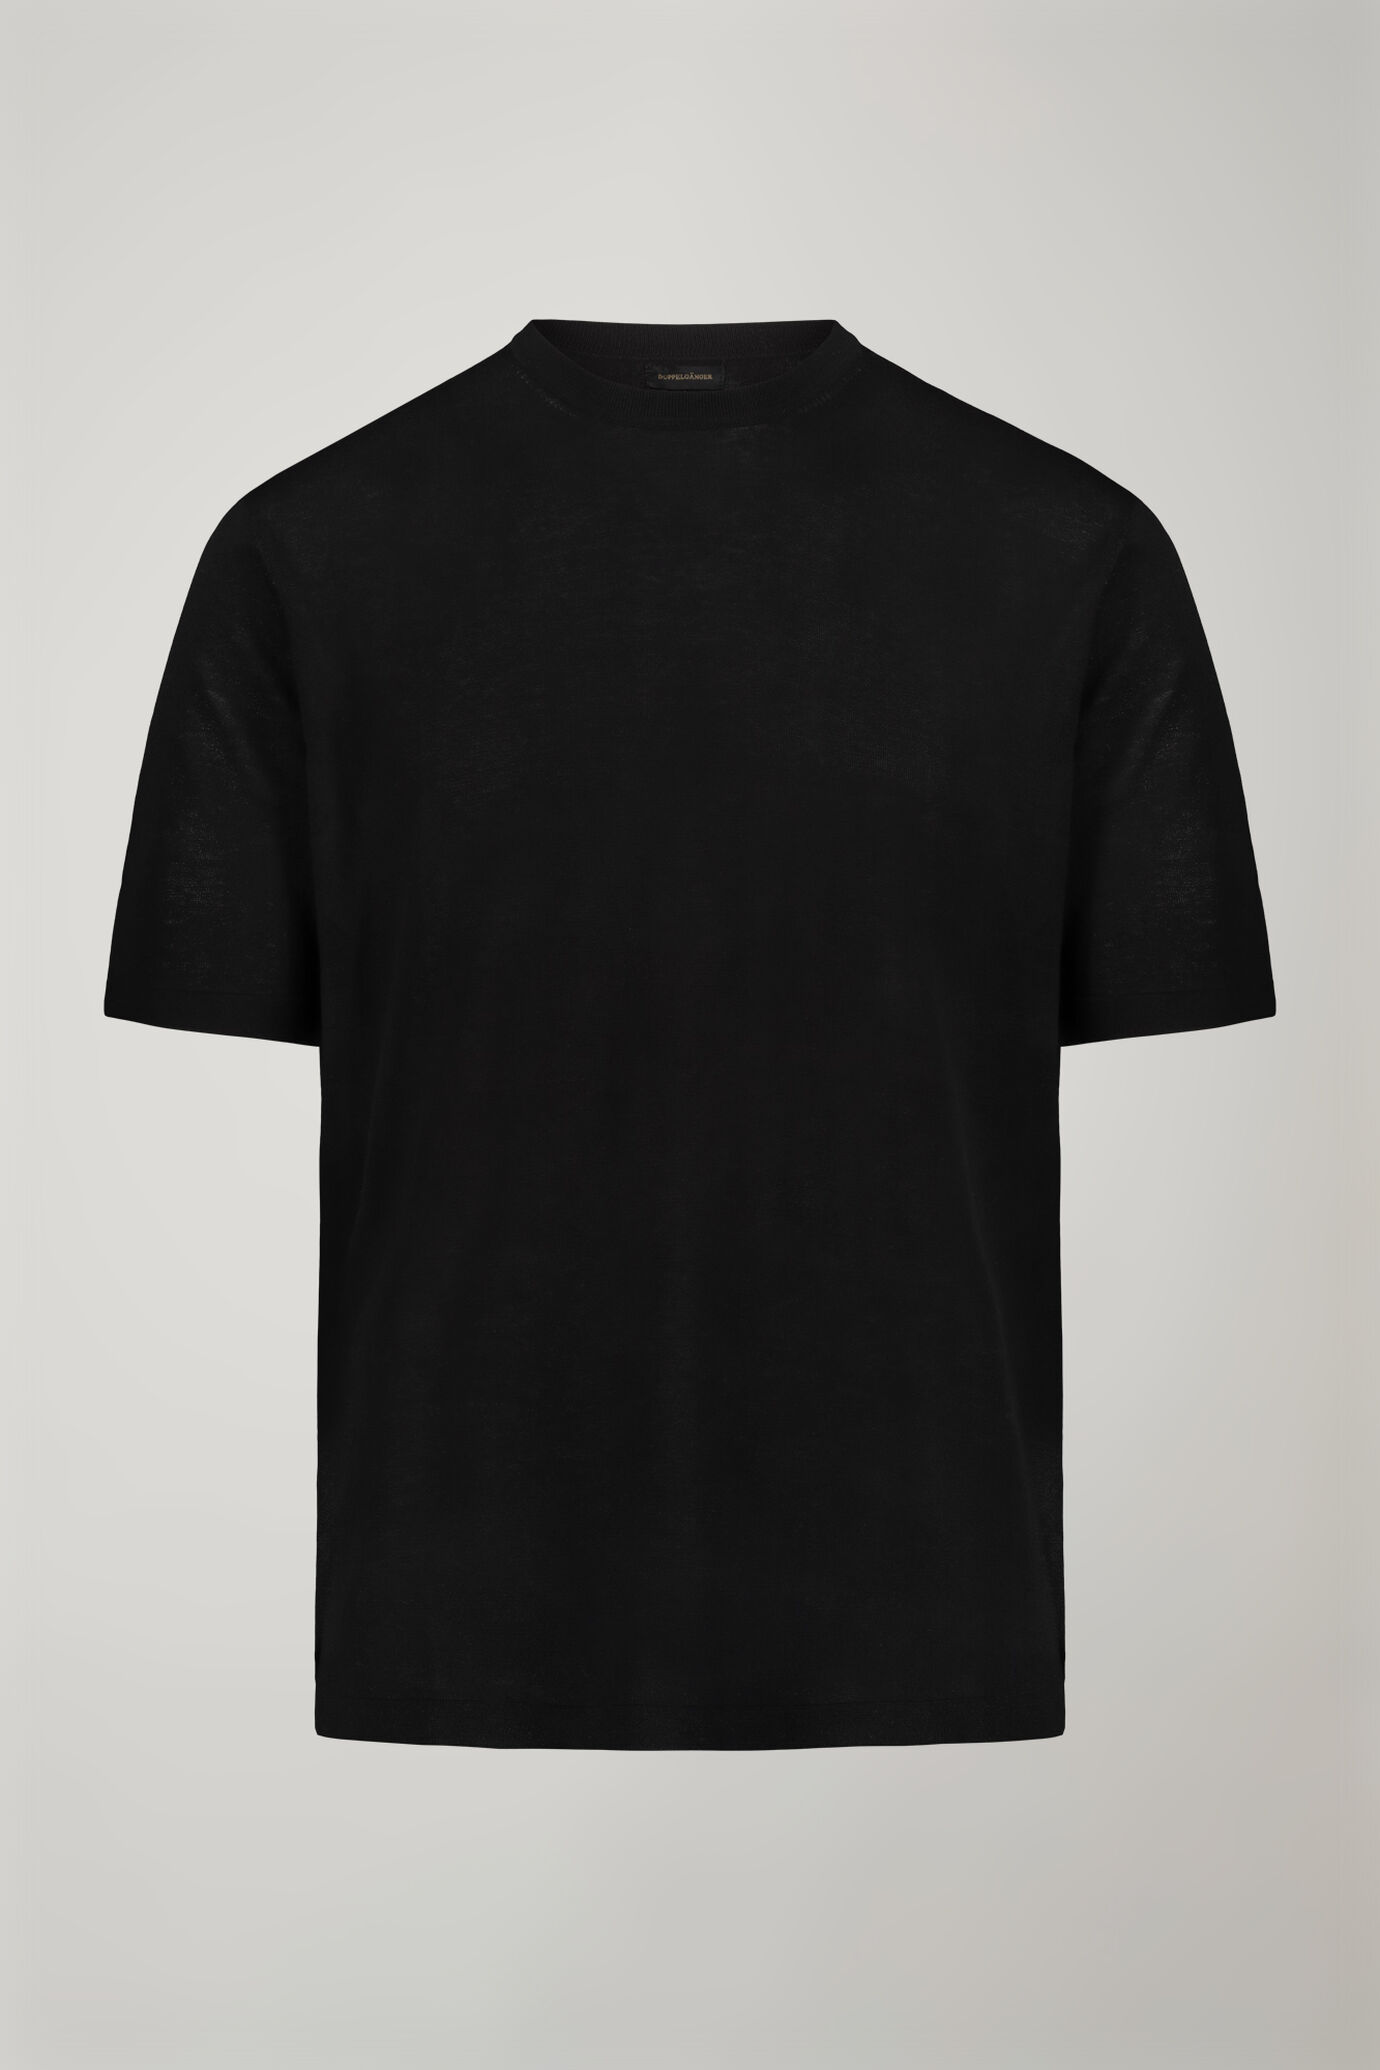 Herren-T-Shirt aus 100 % Baumwolle mit kurzen Ärmeln in normaler Passform image number 4